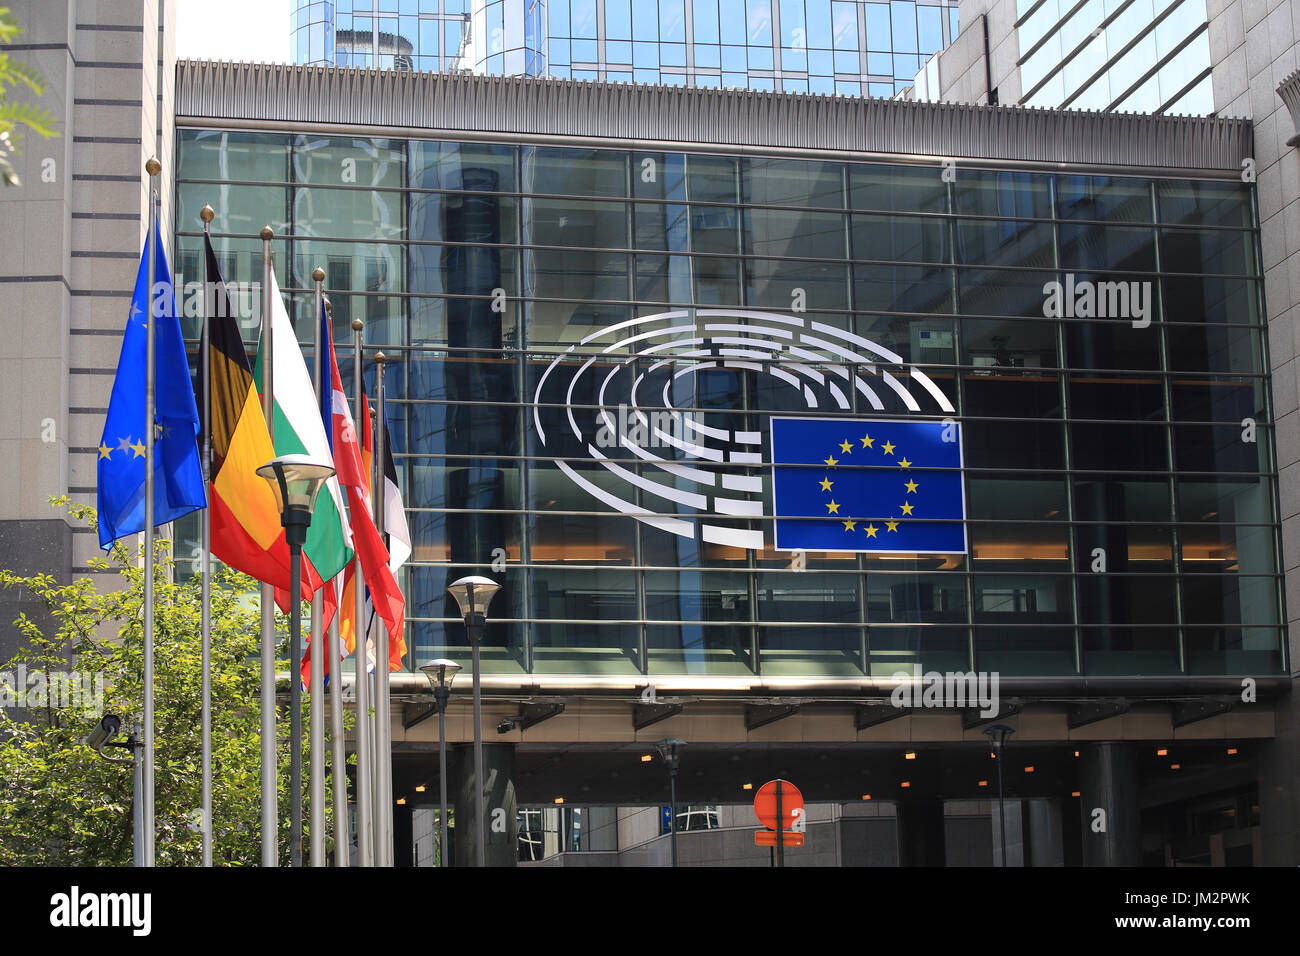 Bruselas, Bélgica - Julio 17, 2017: el edificio del Parlamento Europeo en un día soleado. Emblema del Parlamento Europeo y de los países de la UE las banderas. Foto de stock